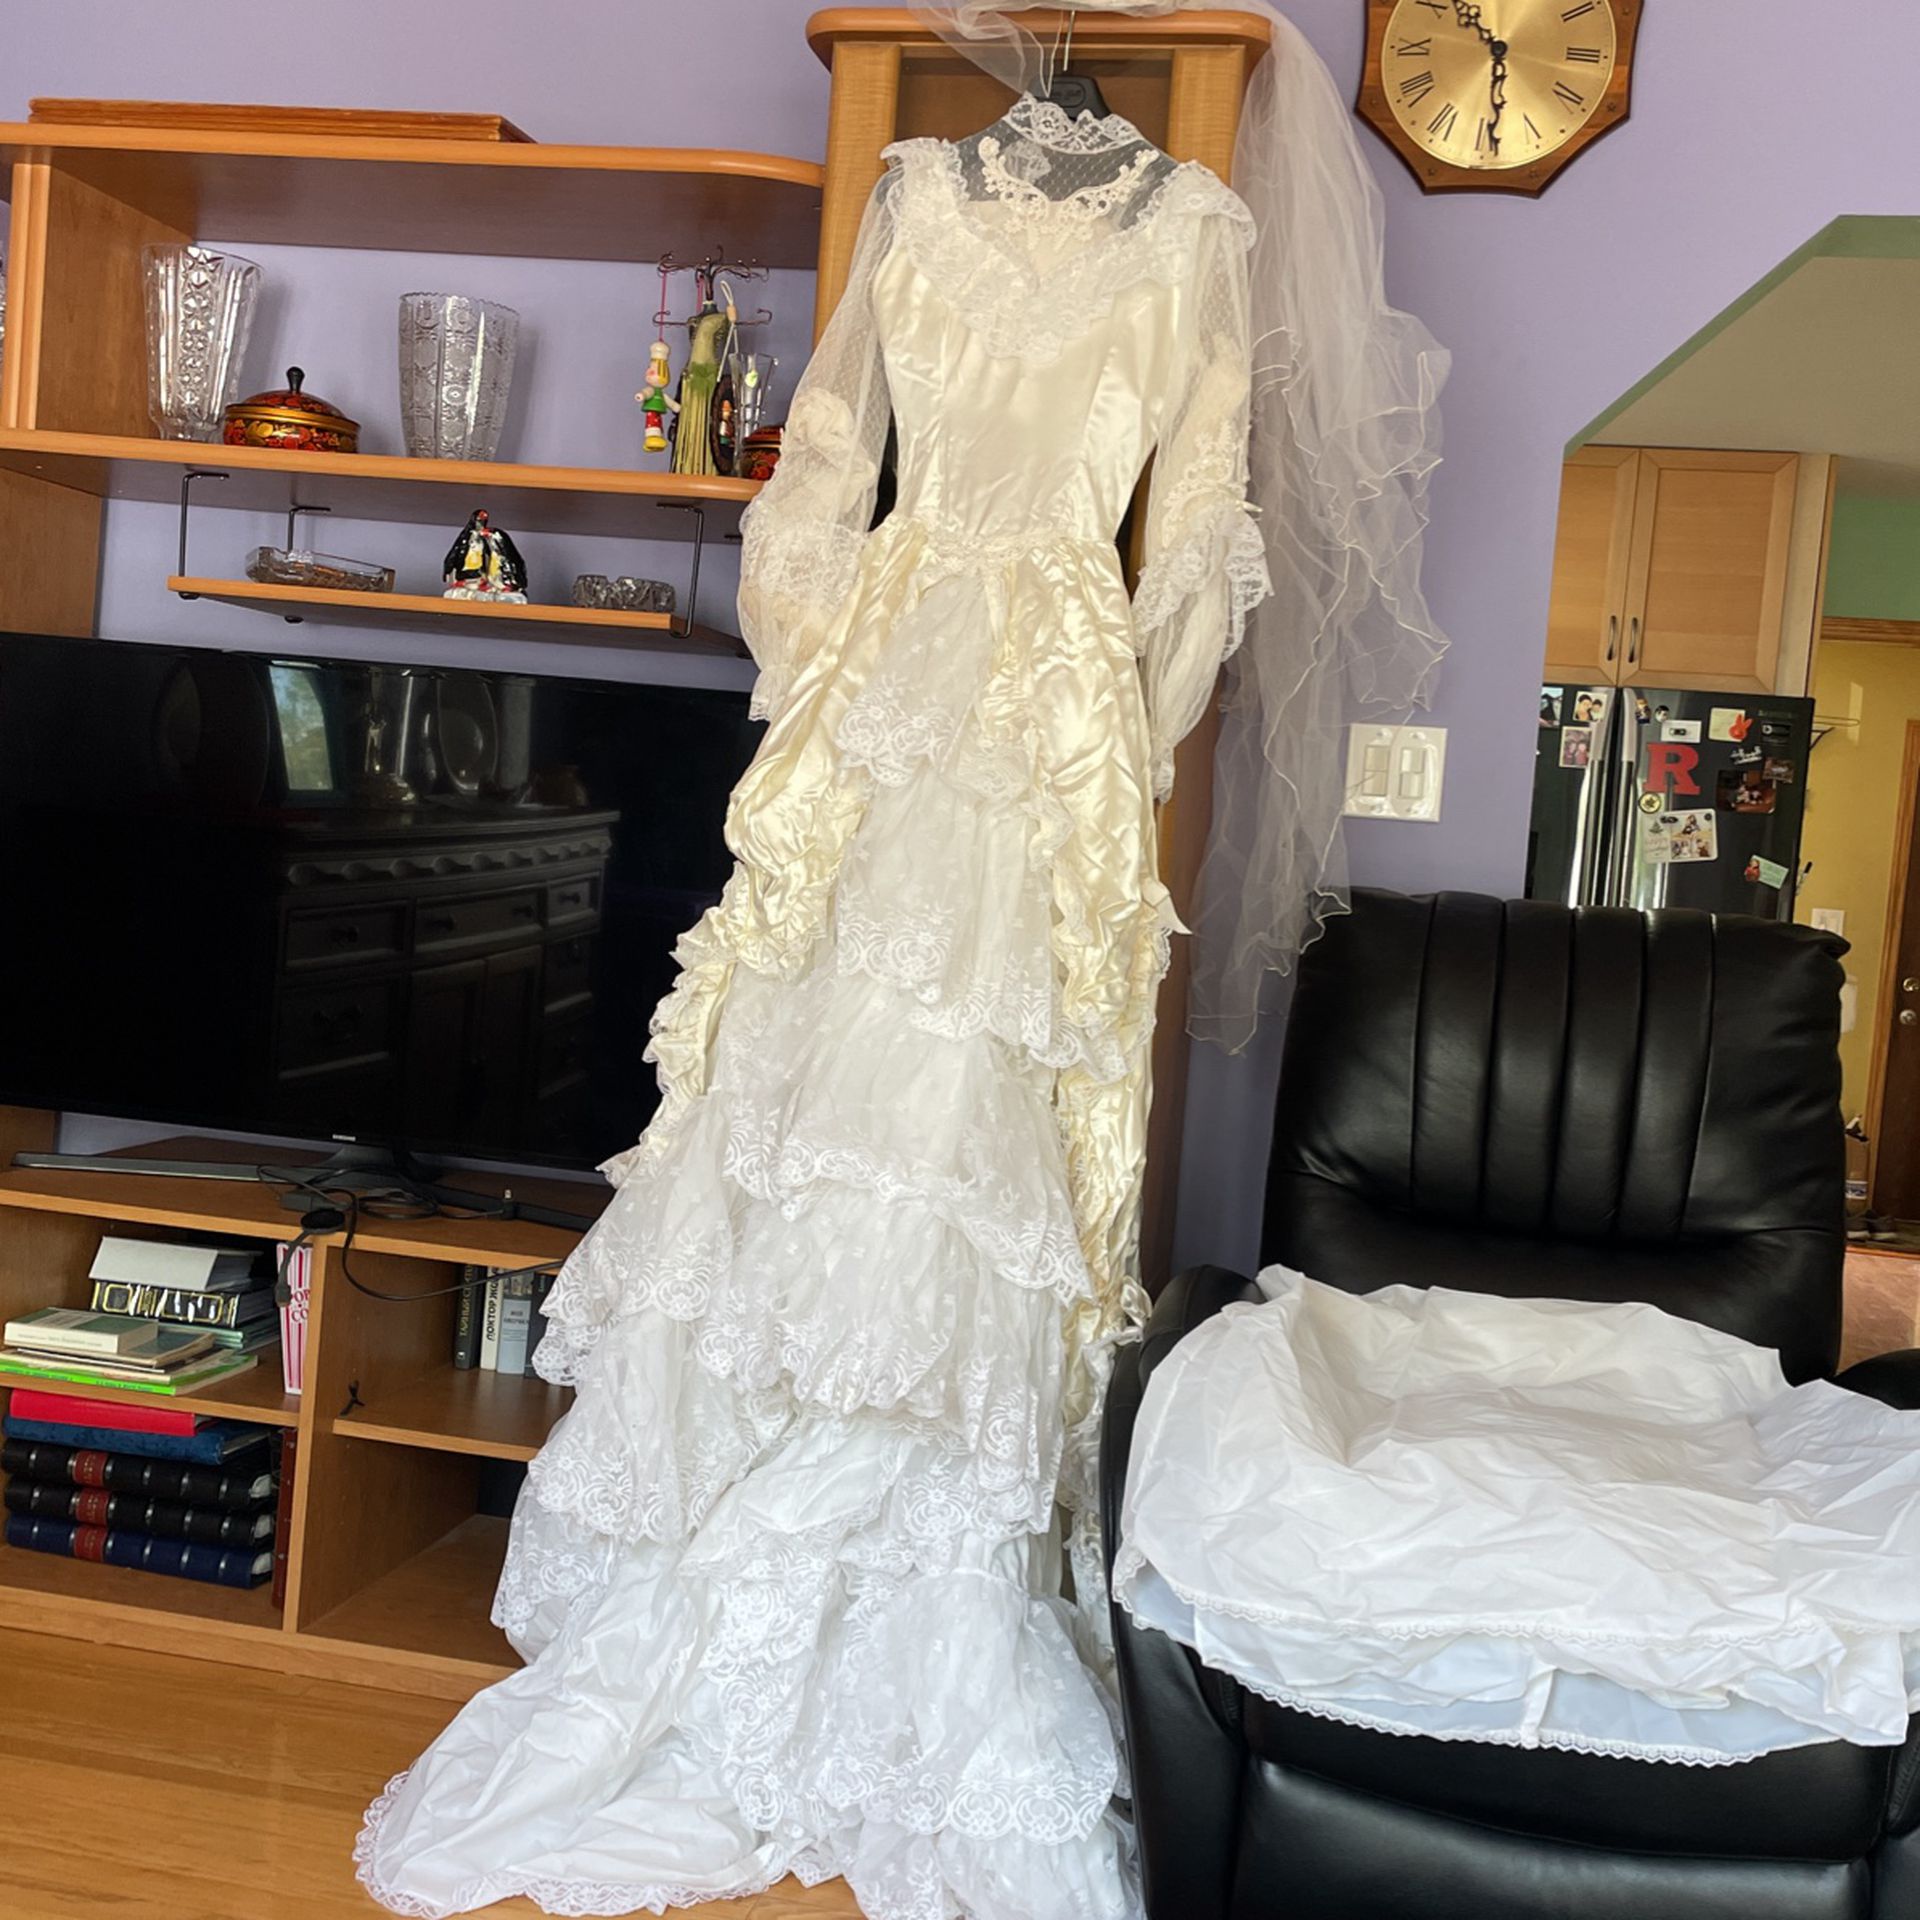 New White Wedding Dress, White Lace Hat, Petticoat. Size Medium. Never Used 